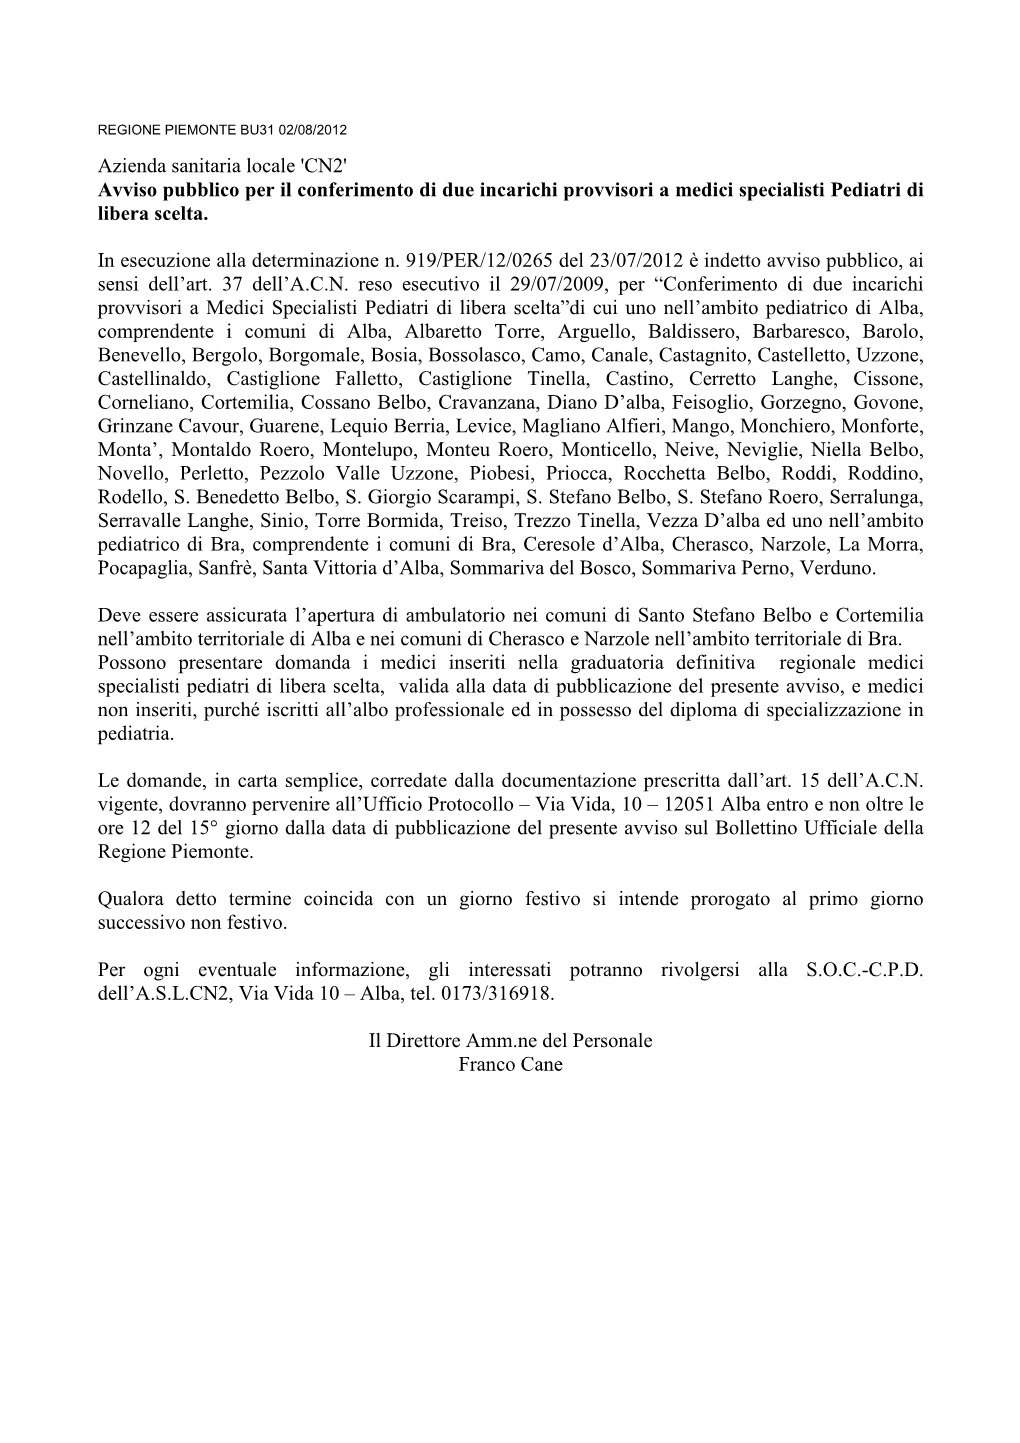 Co Azienda Sanitaria Locale Cn2 2012-07